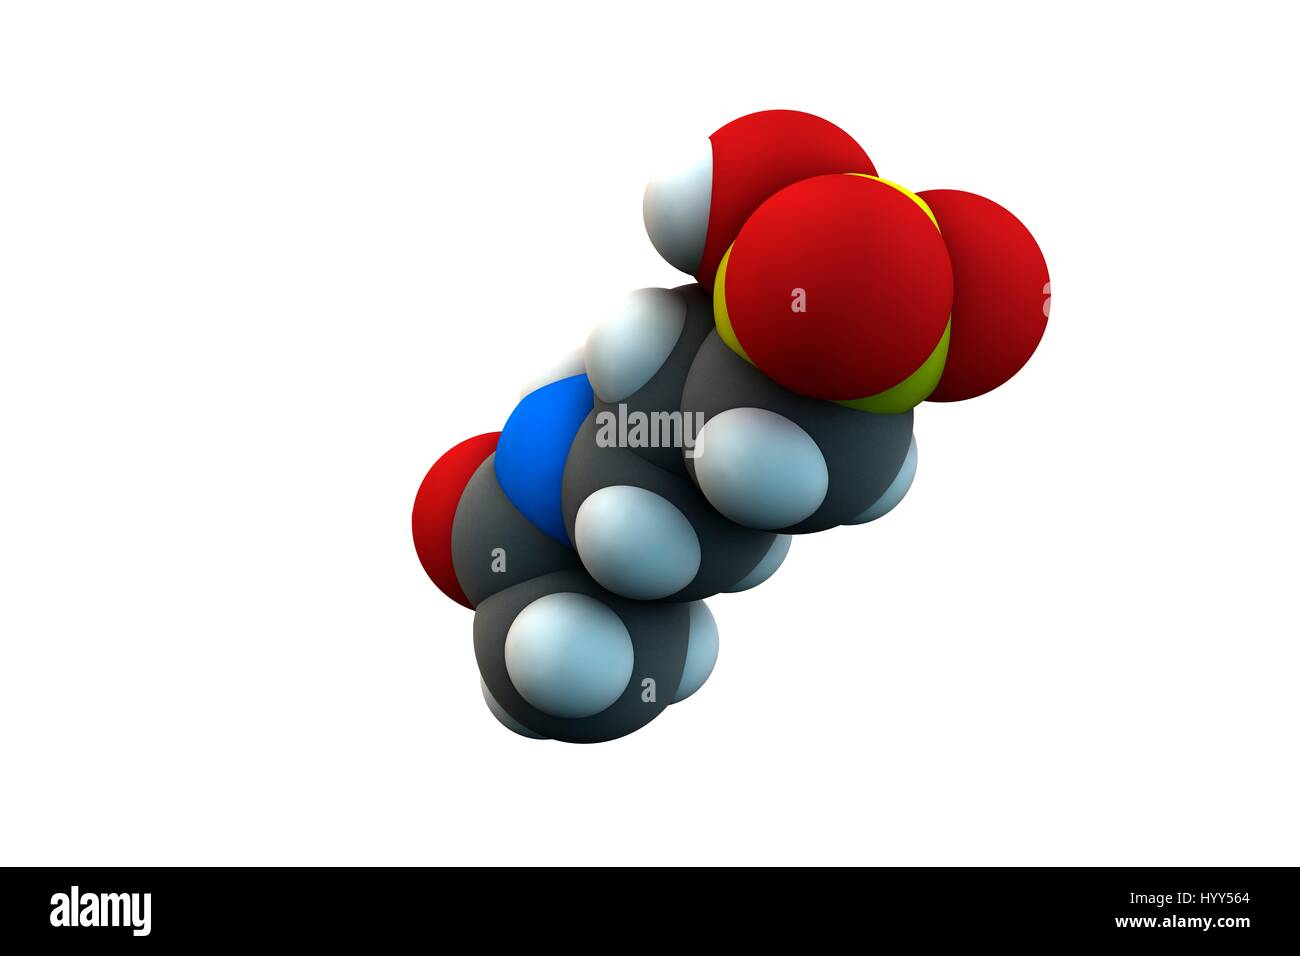 Acamprosate Alkoholismus Behandlung Wirkstoffmolekül. Chemische Formel ist C5H11NO4S. Atome werden als Kugeln dargestellt: Kohlenstoff (grau), Wasserstoff (weiß), Stickstoff (blau), Sauerstoff (rot), Schwefel (gelb). Abbildung. Stockfoto